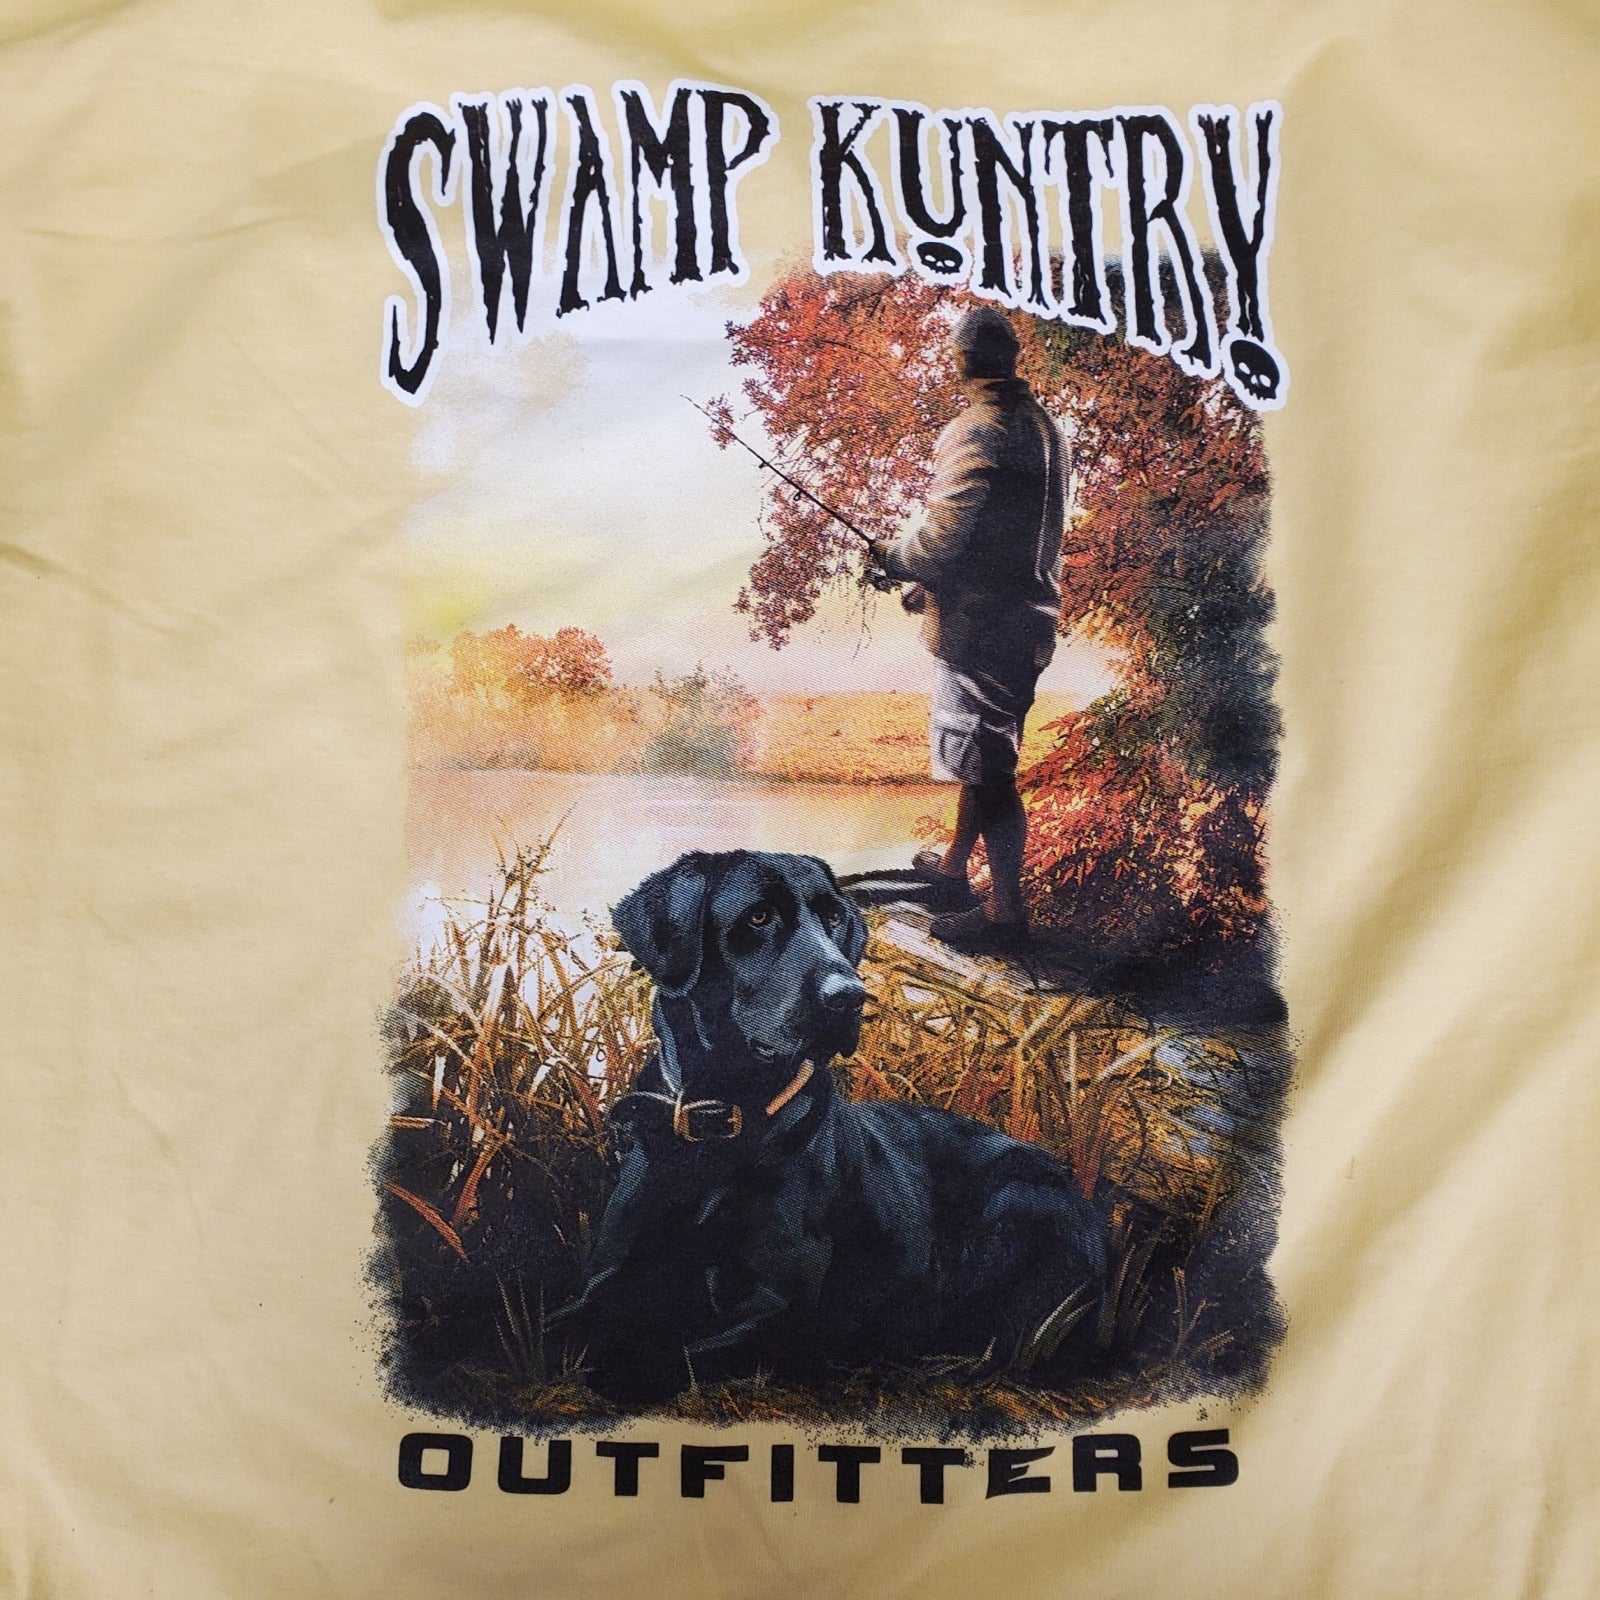 Swamp Kuntry Fishing T-Shirt